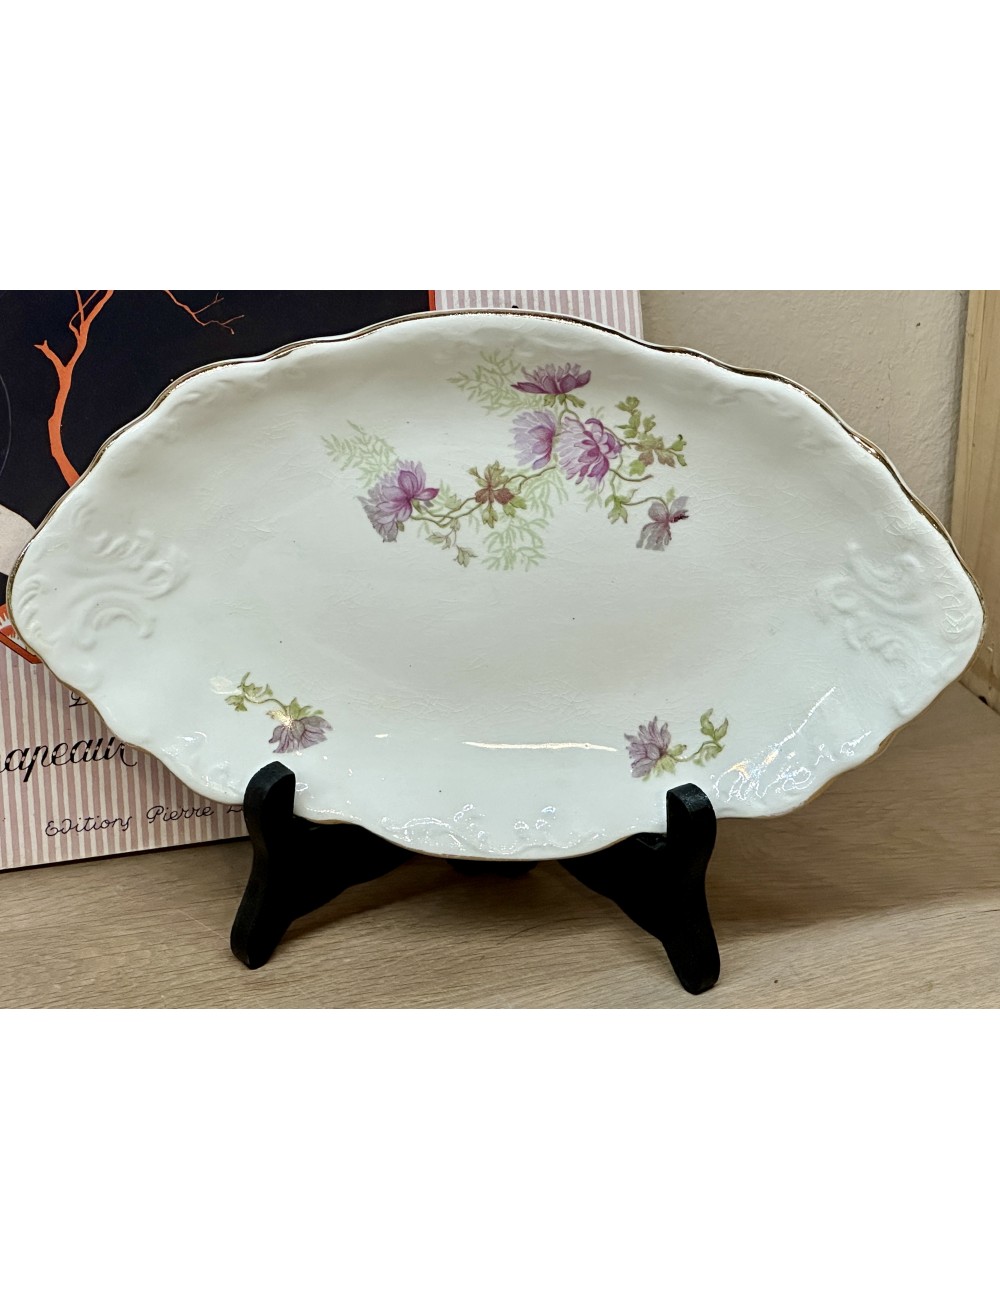 Sour dish / Ravier - Petrus Regout - décor of pink/lilac flowers - model WILHELMINA